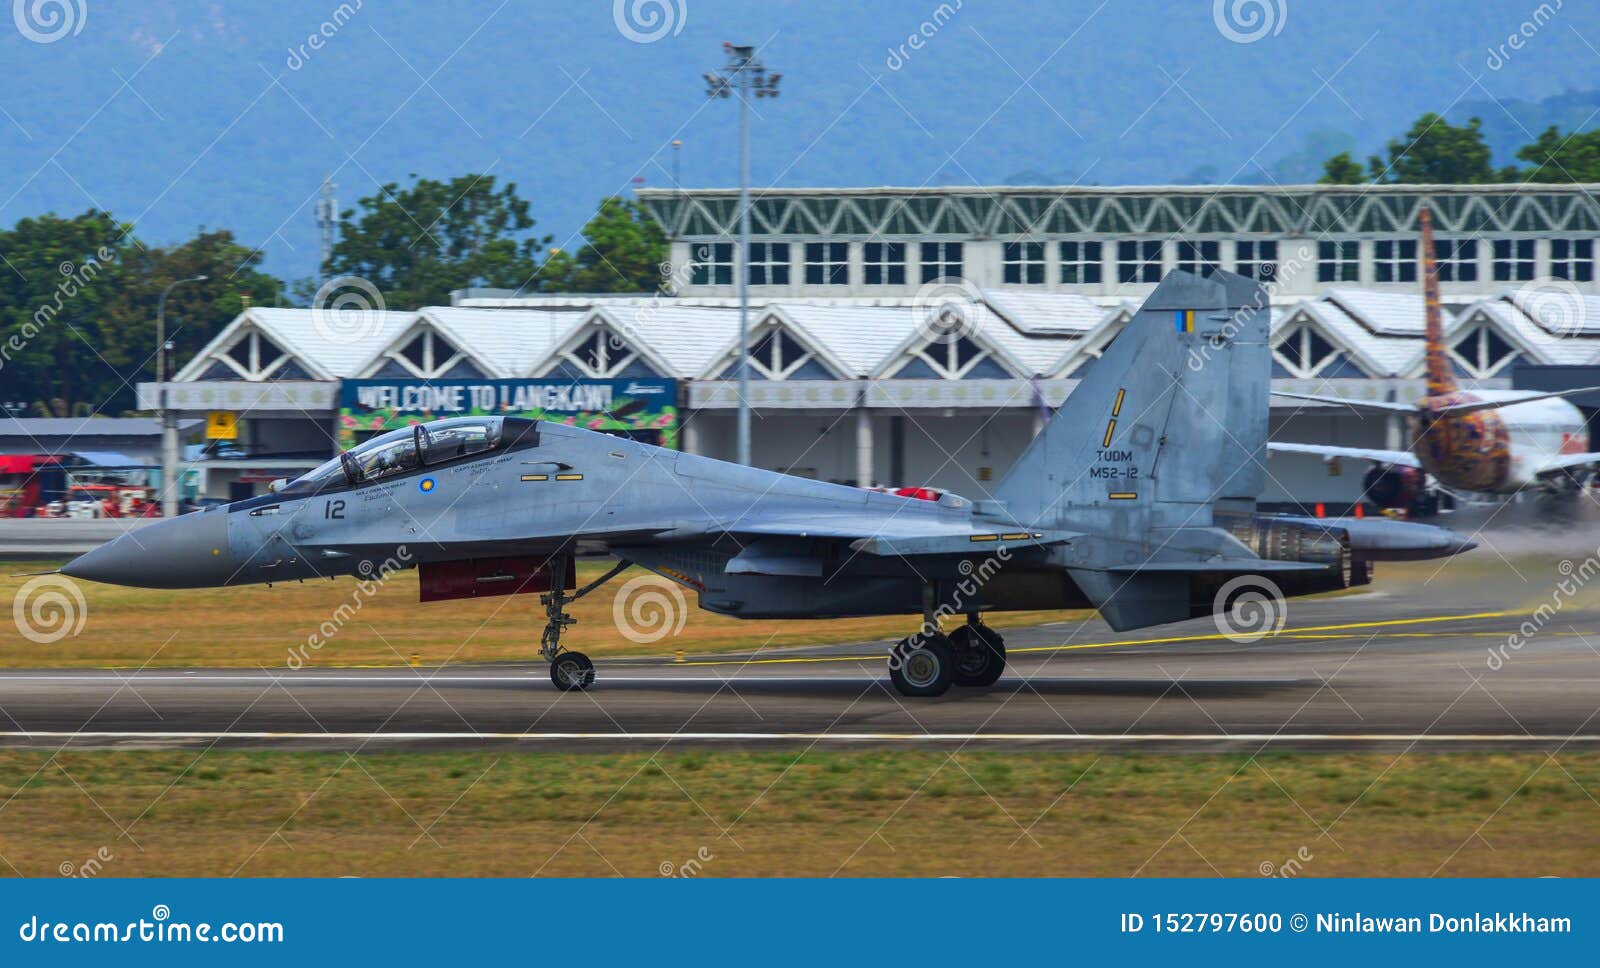 Jet pejuang malaysia